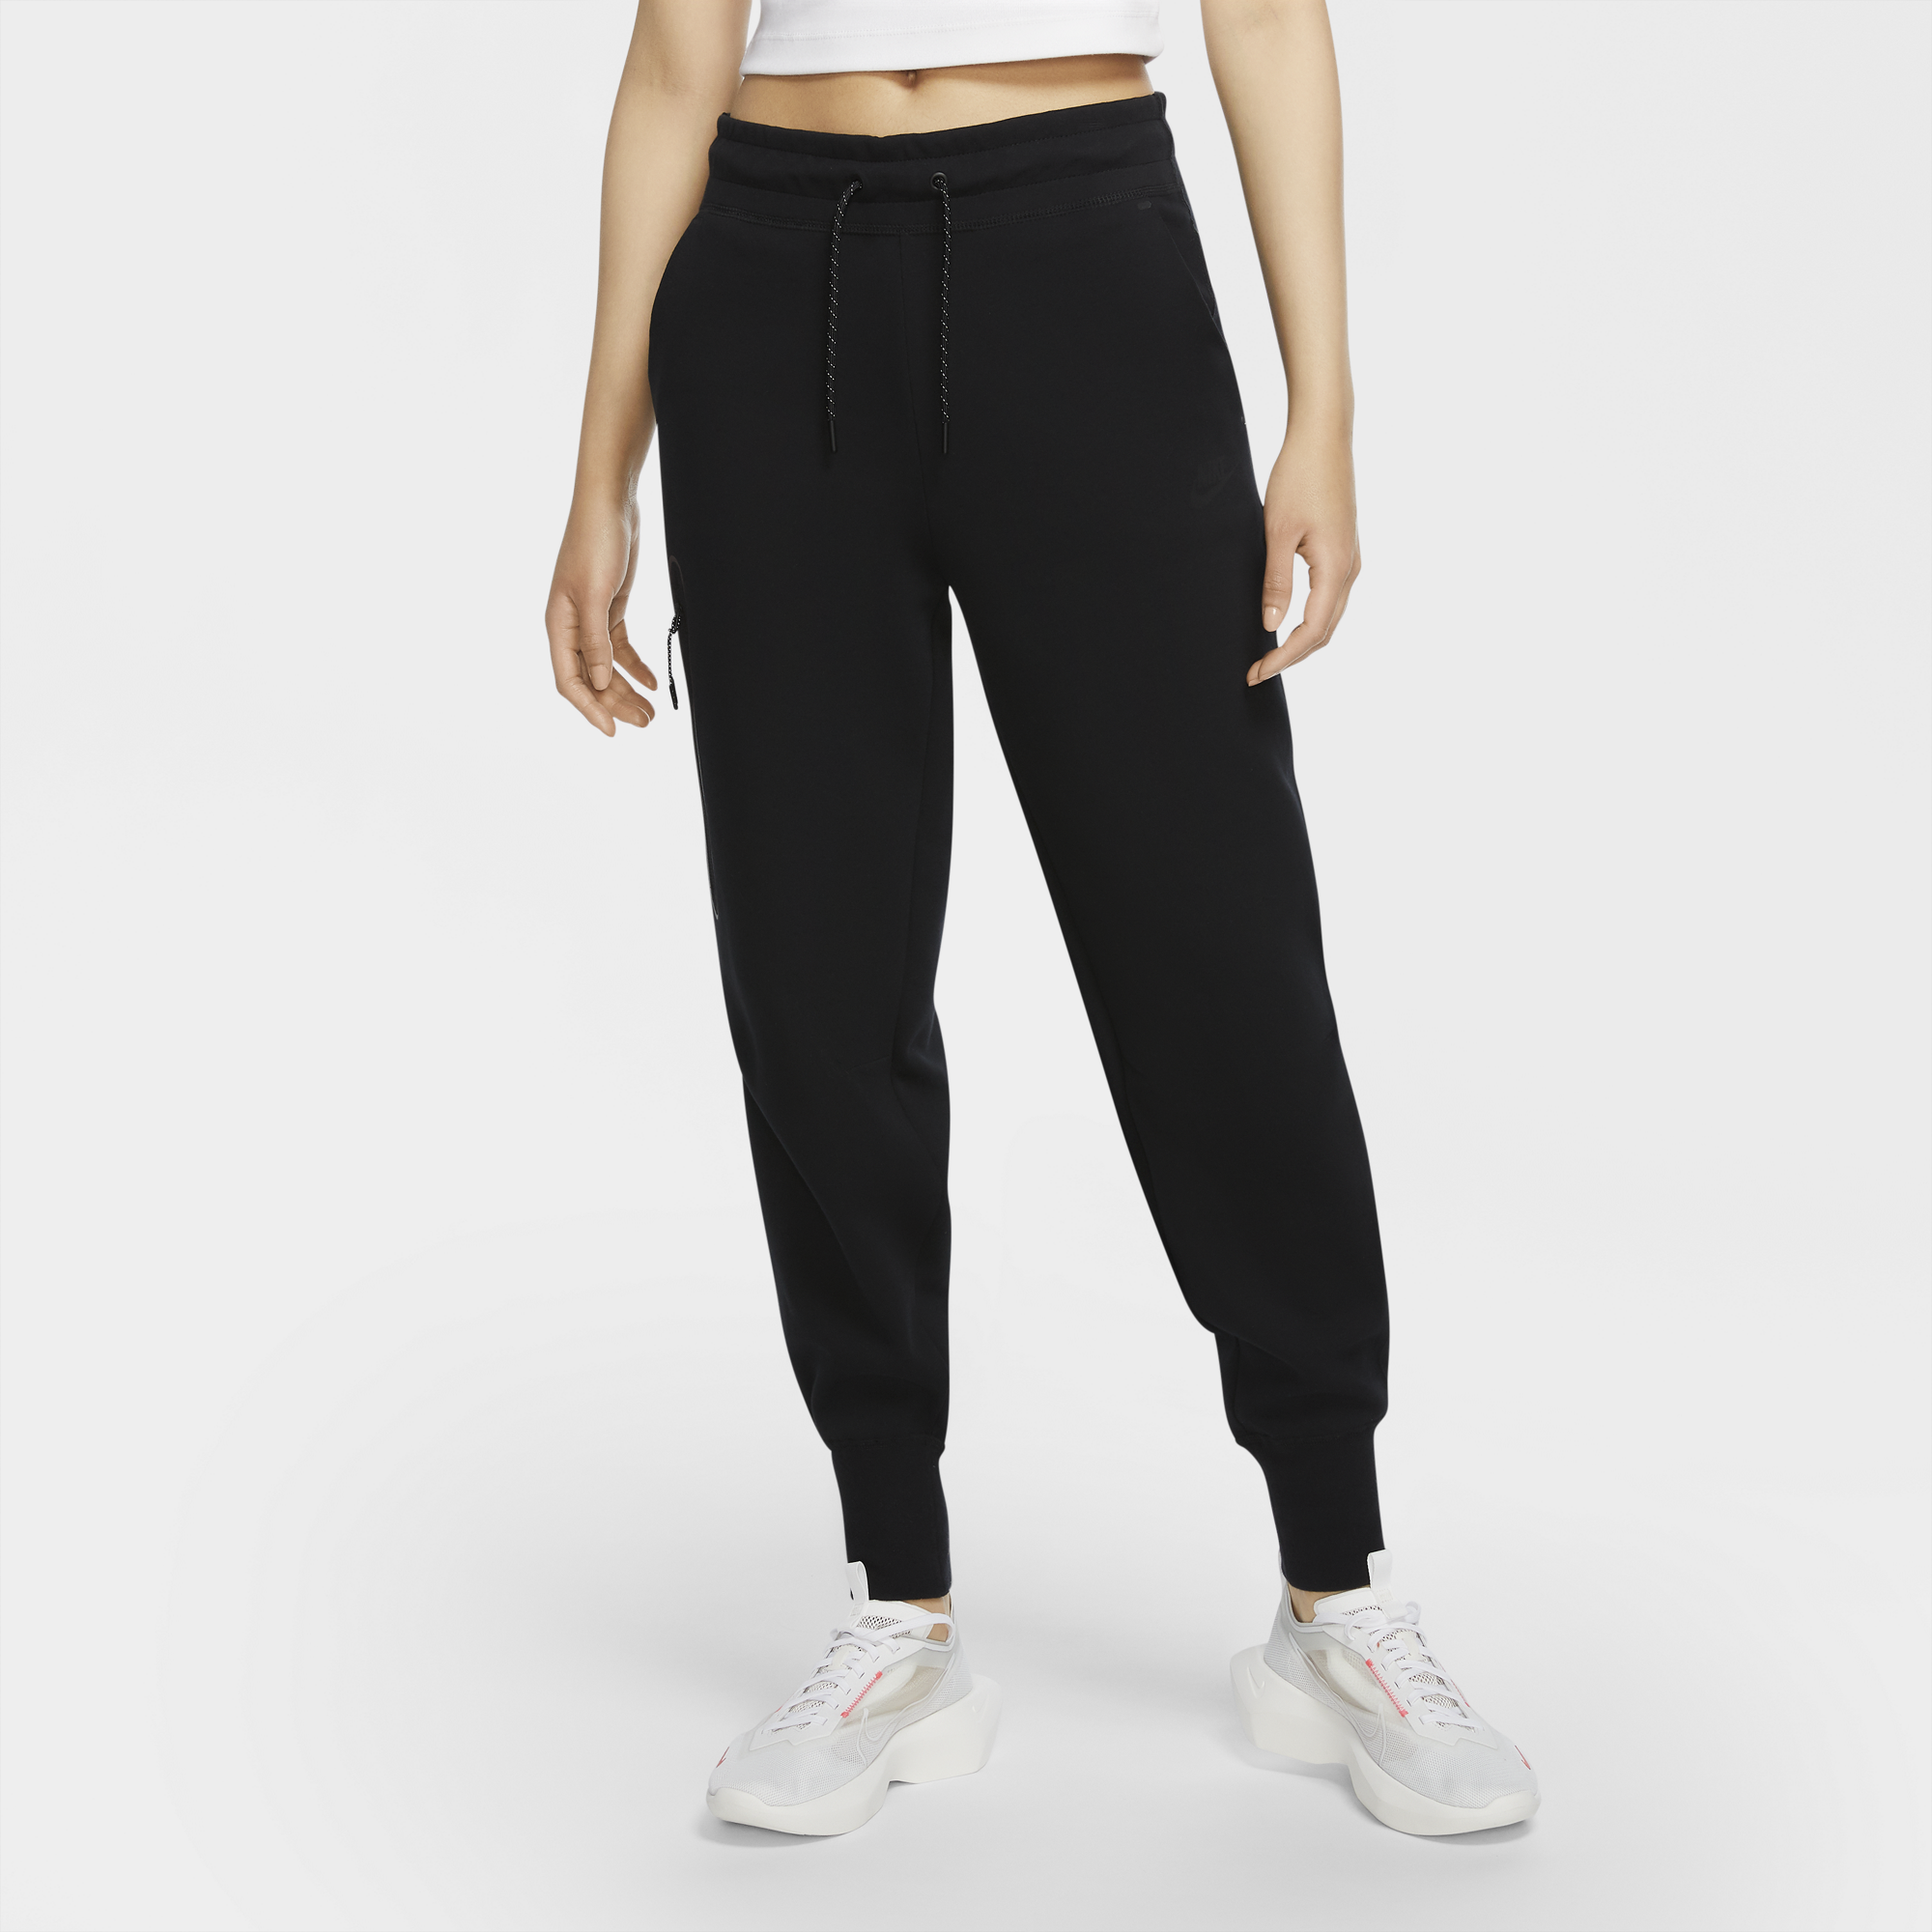 Nike NSW Tech Fleece Pants | Champs Sports